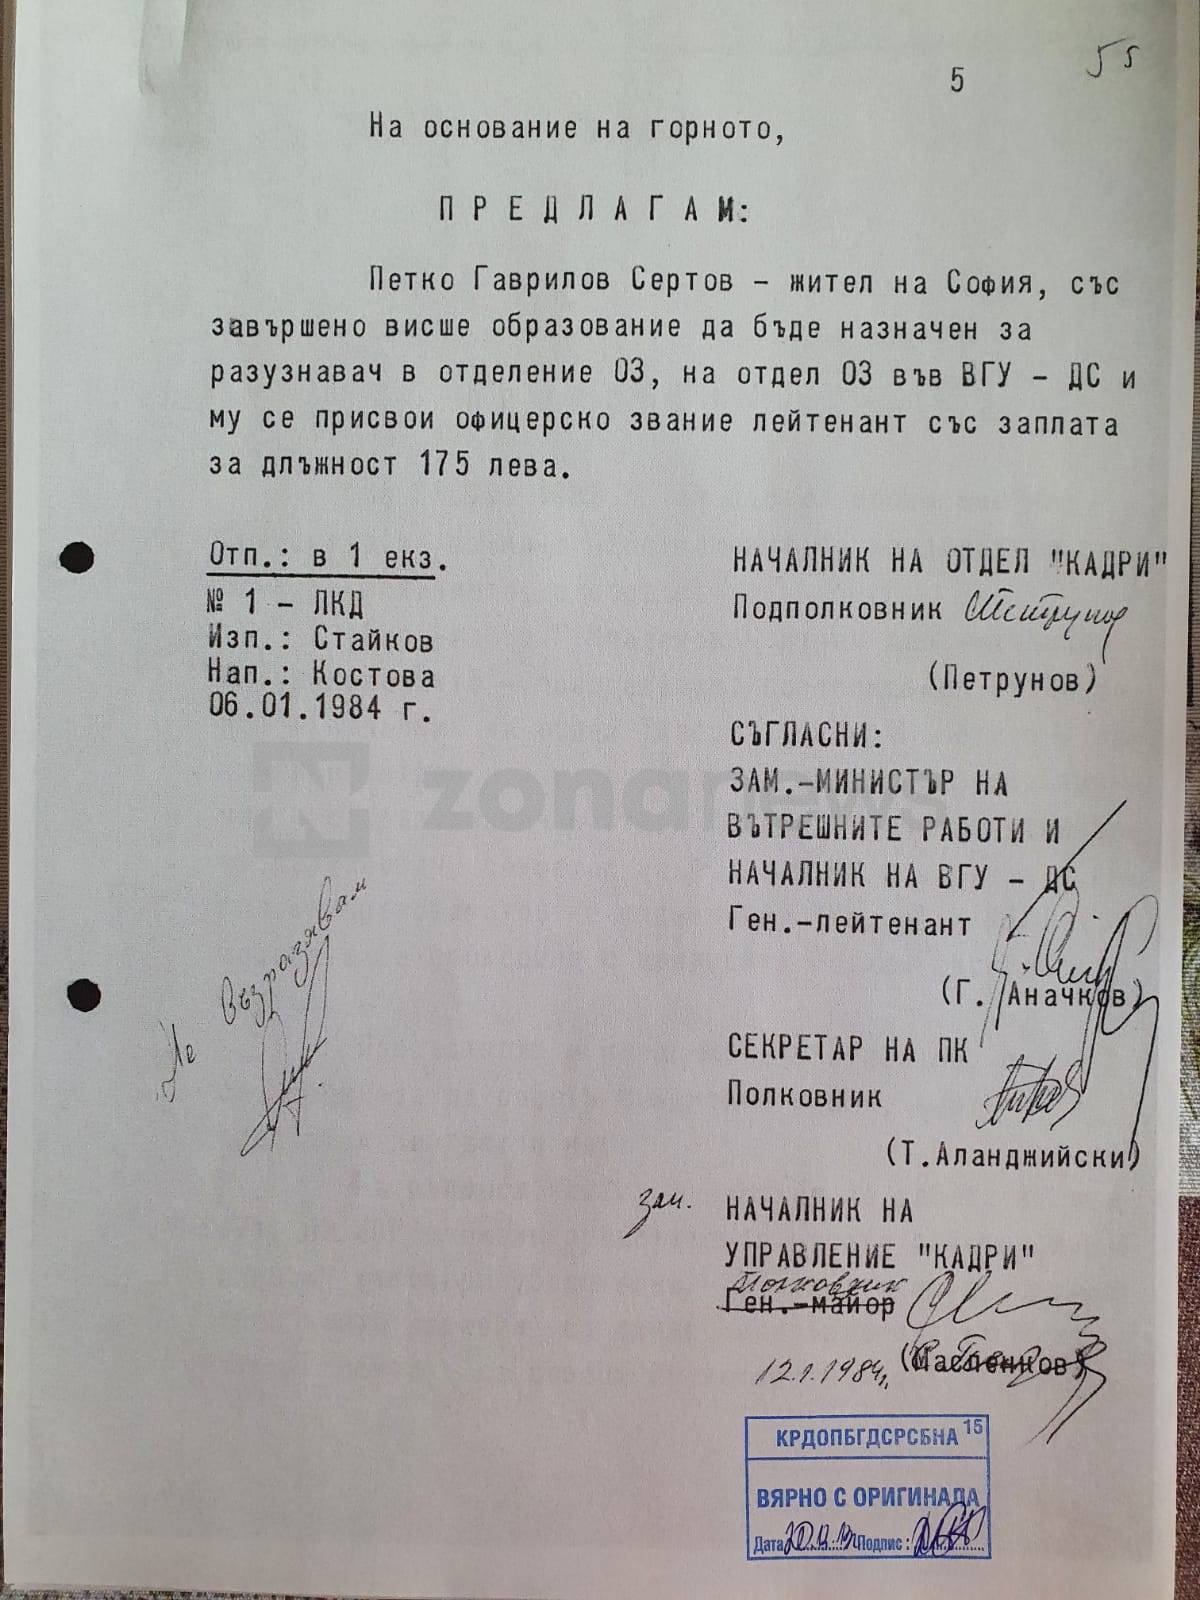 Документ, който удостоверява назначението на Петко Сертов във ВГУ-ДС (2)